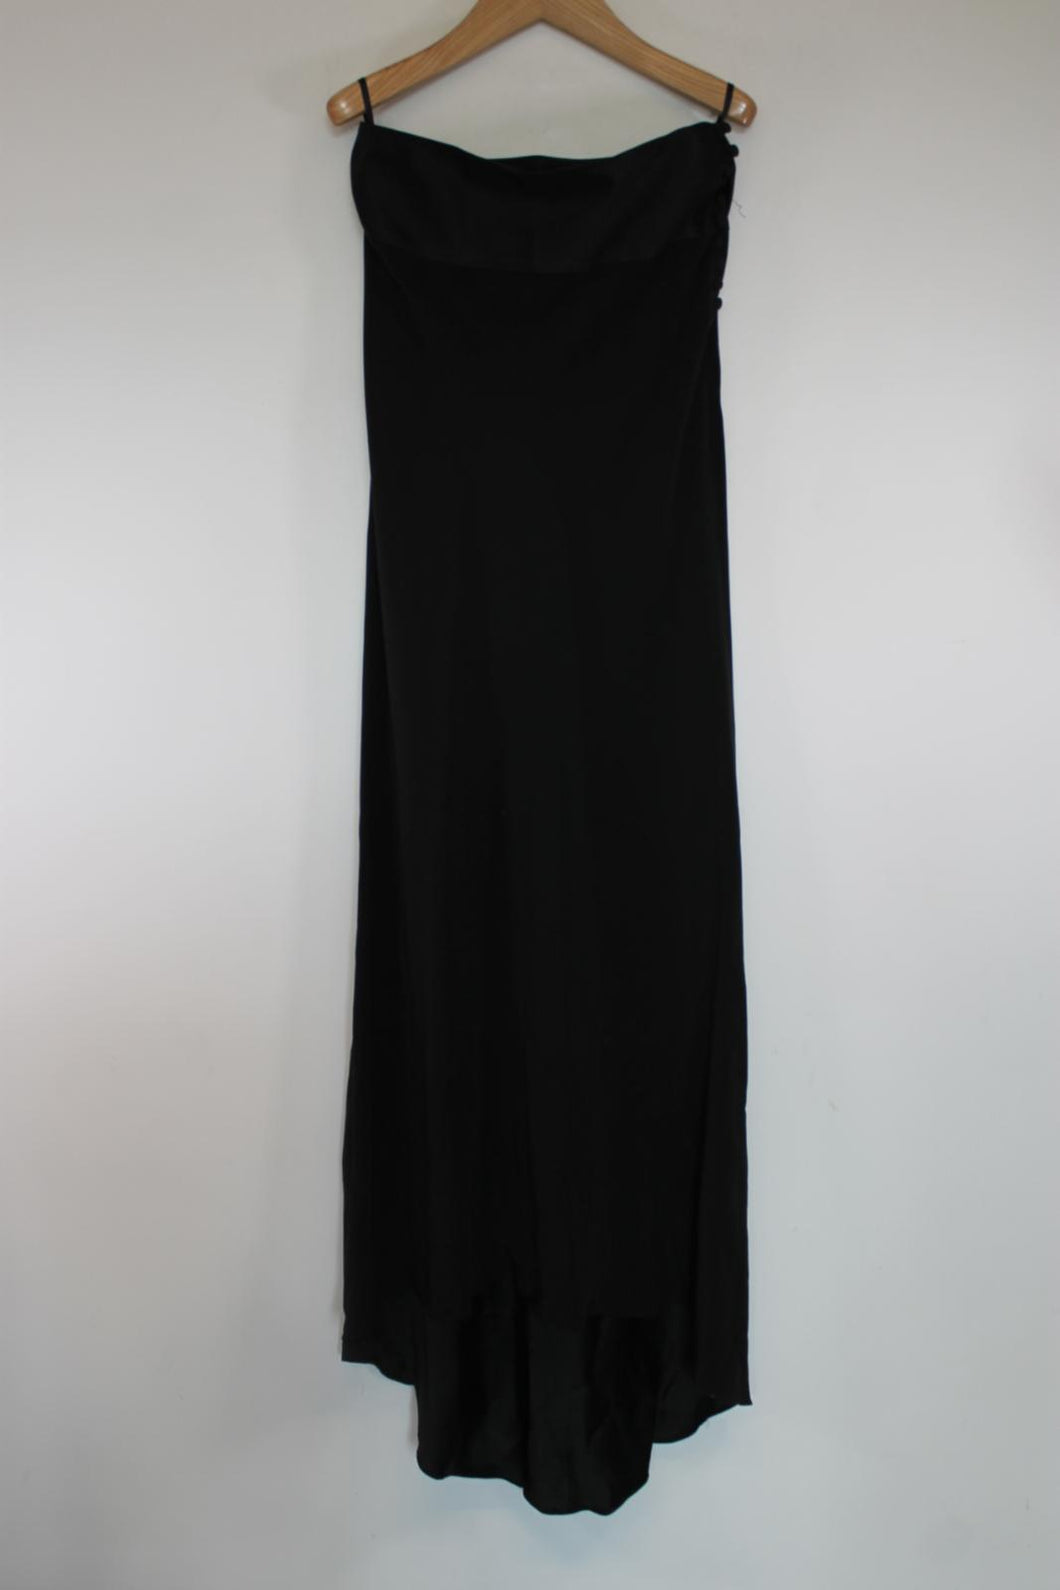 LITTLE BLACK DRESS Ladies Black Silk Blend Off-The-Shoulder Hi-Low Dress UK12